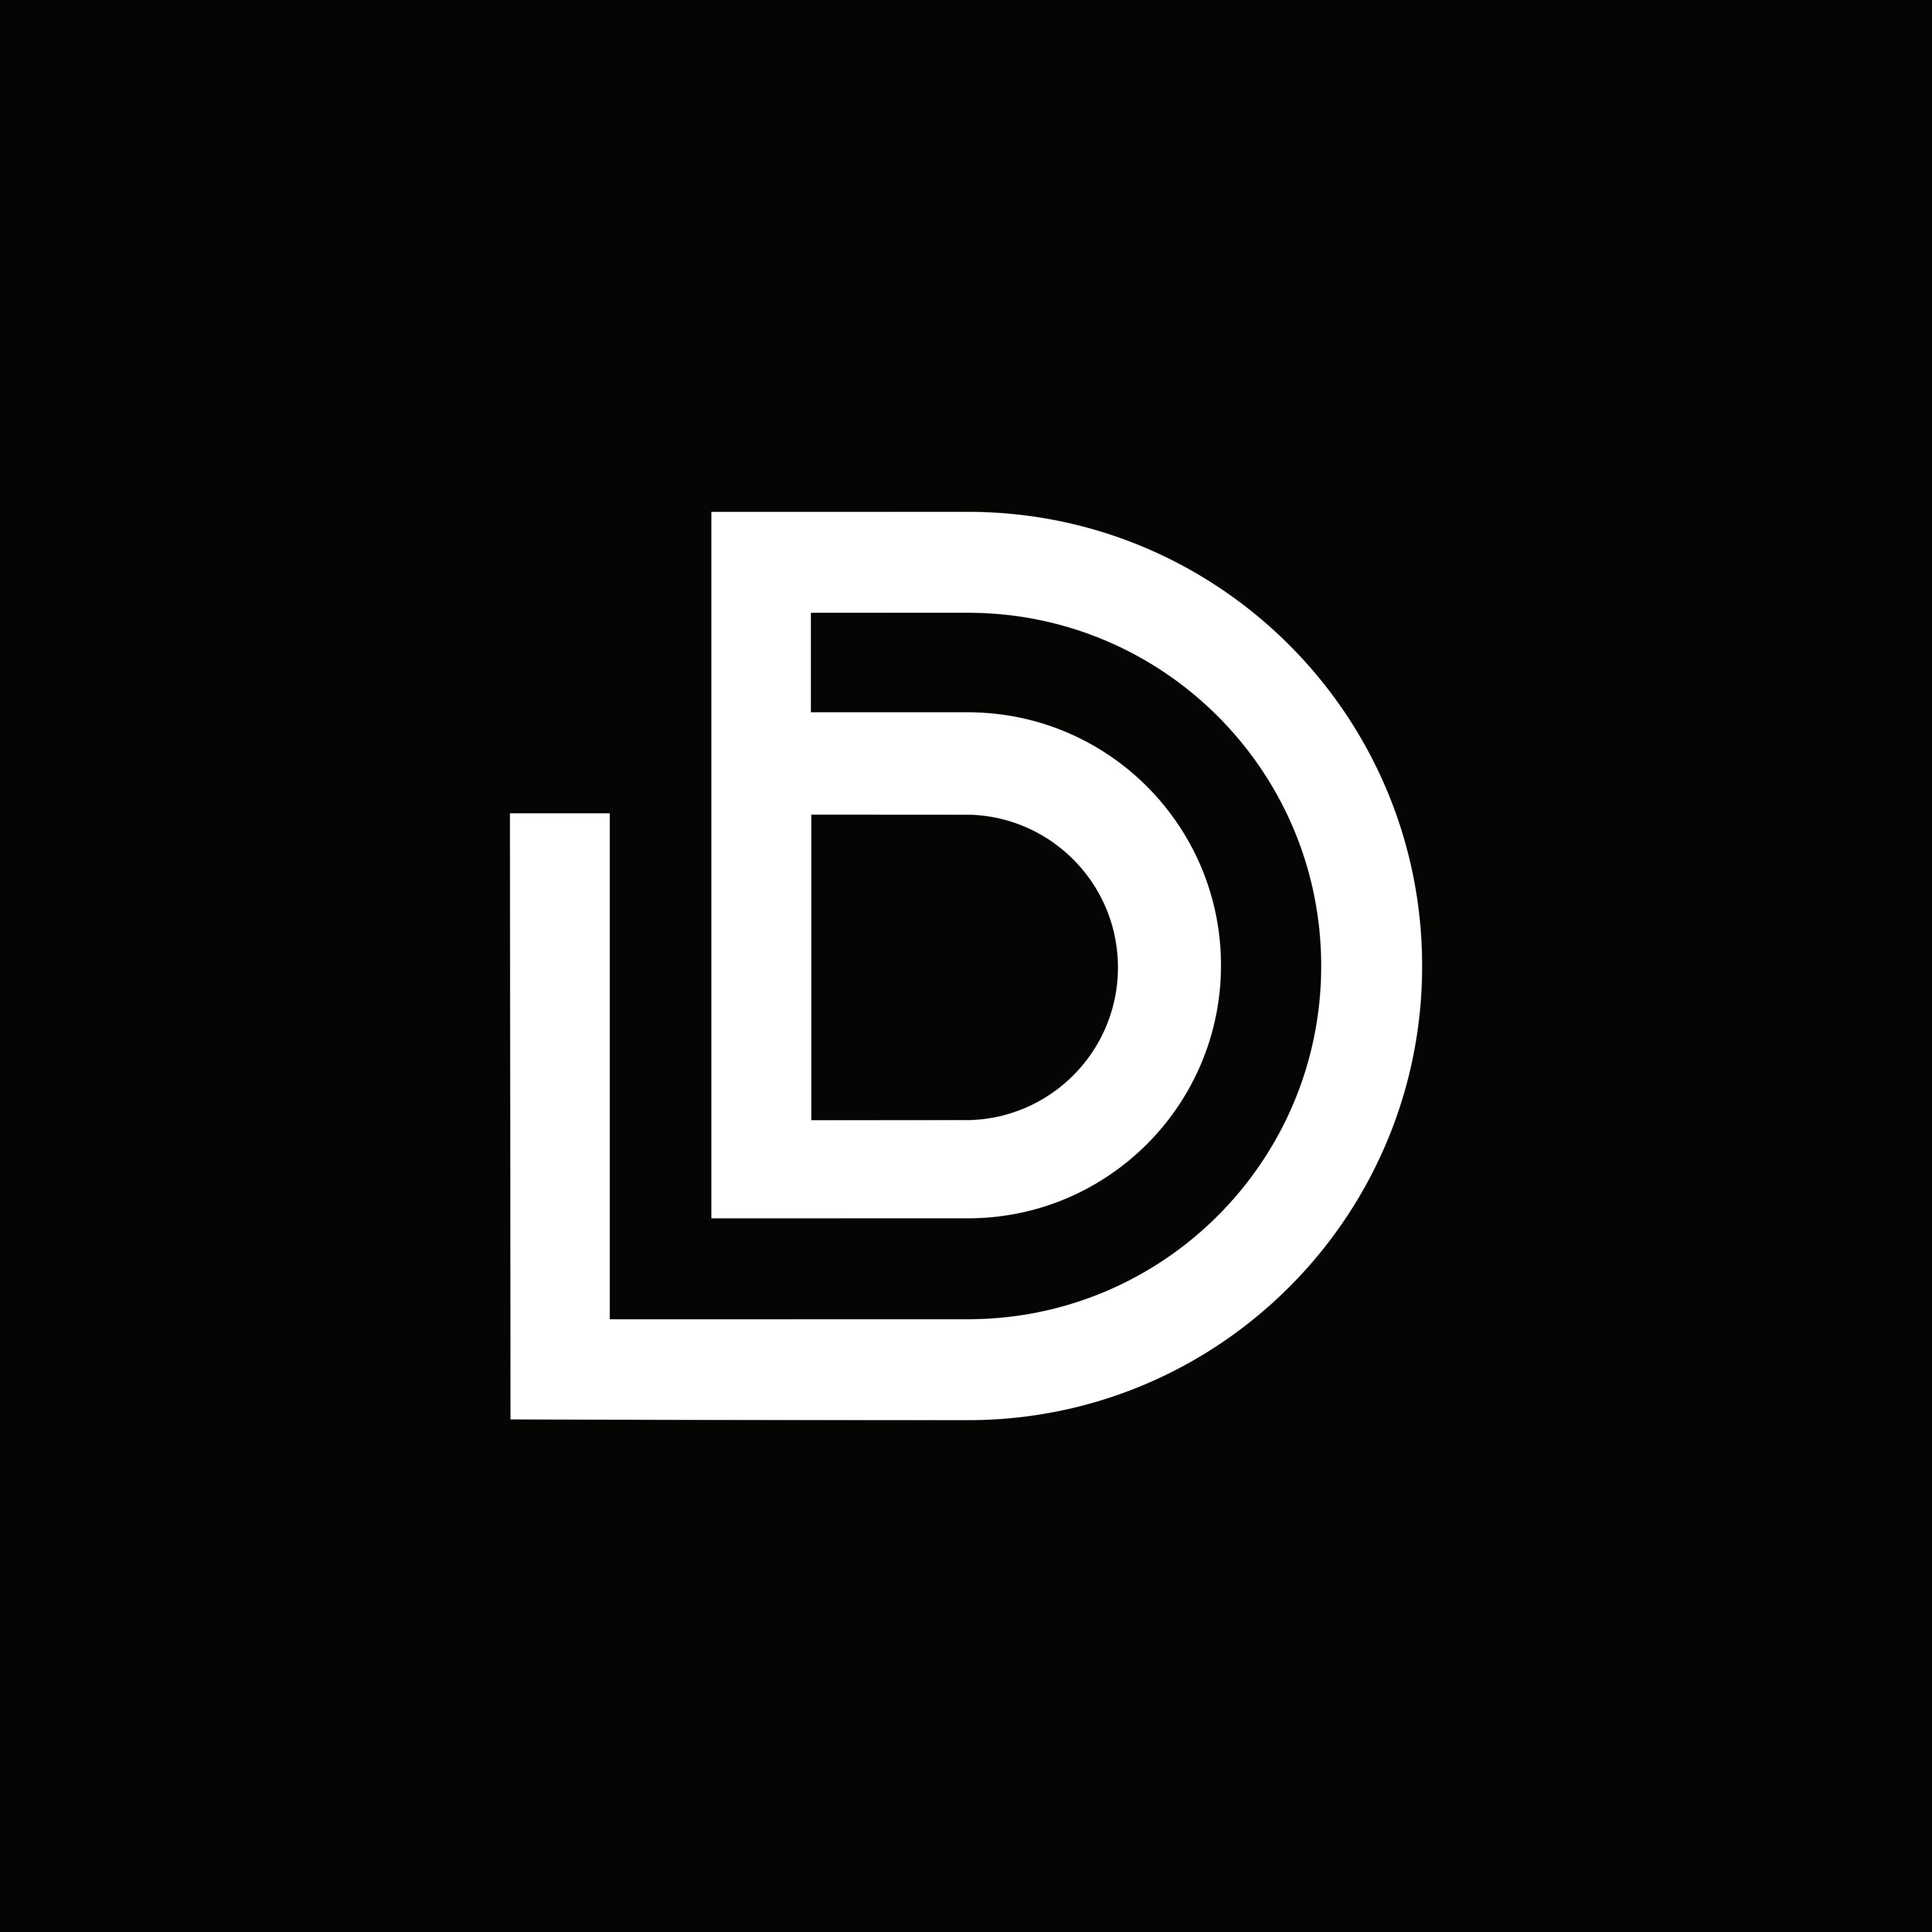 LD Logo - Laura Devalcourt - LD Monogram Logo